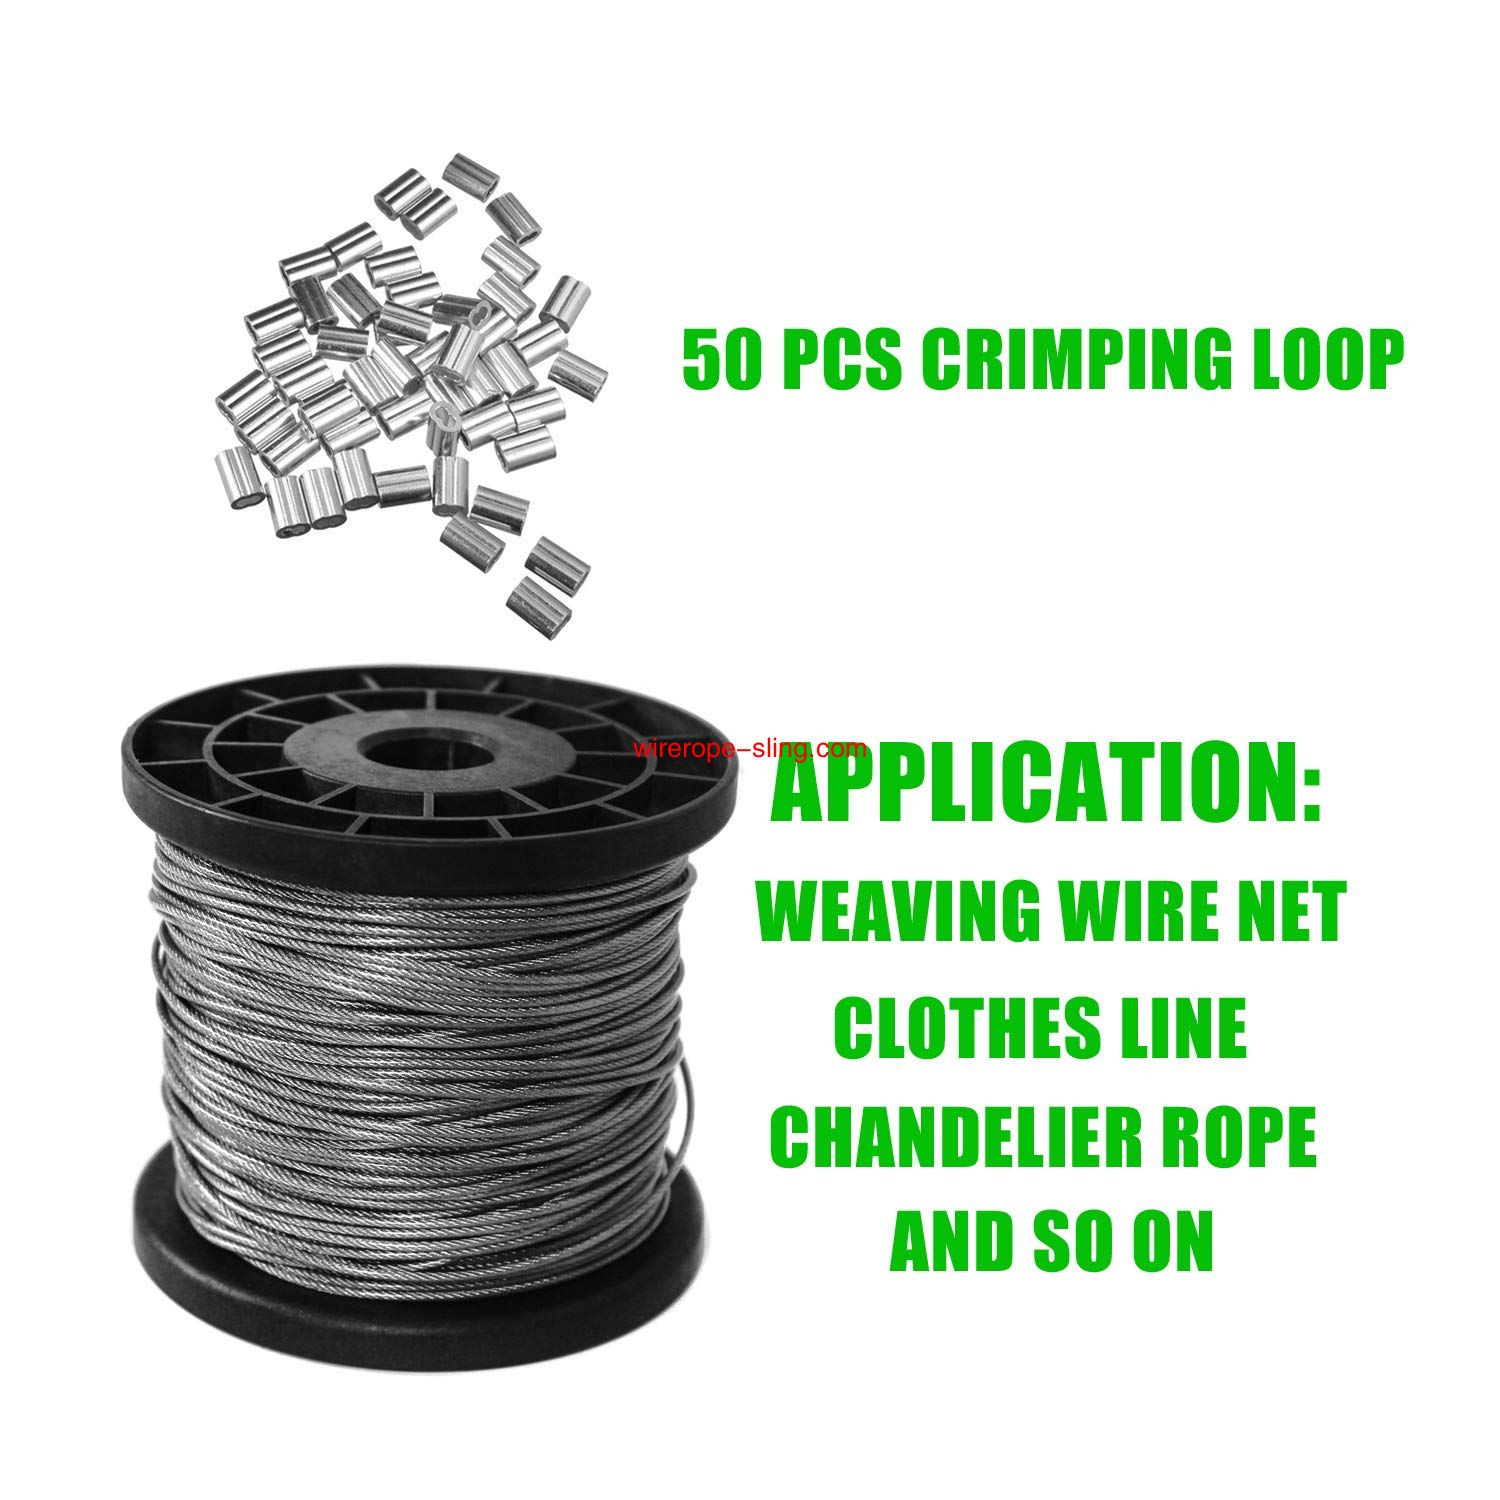 1/16 Vinyl Coated Wire Rope Kit,330 Voeten Stainkless Steel 304 Draadloop met 50 PCS Aluminum Crimping Loop en 10 PCS Clamps